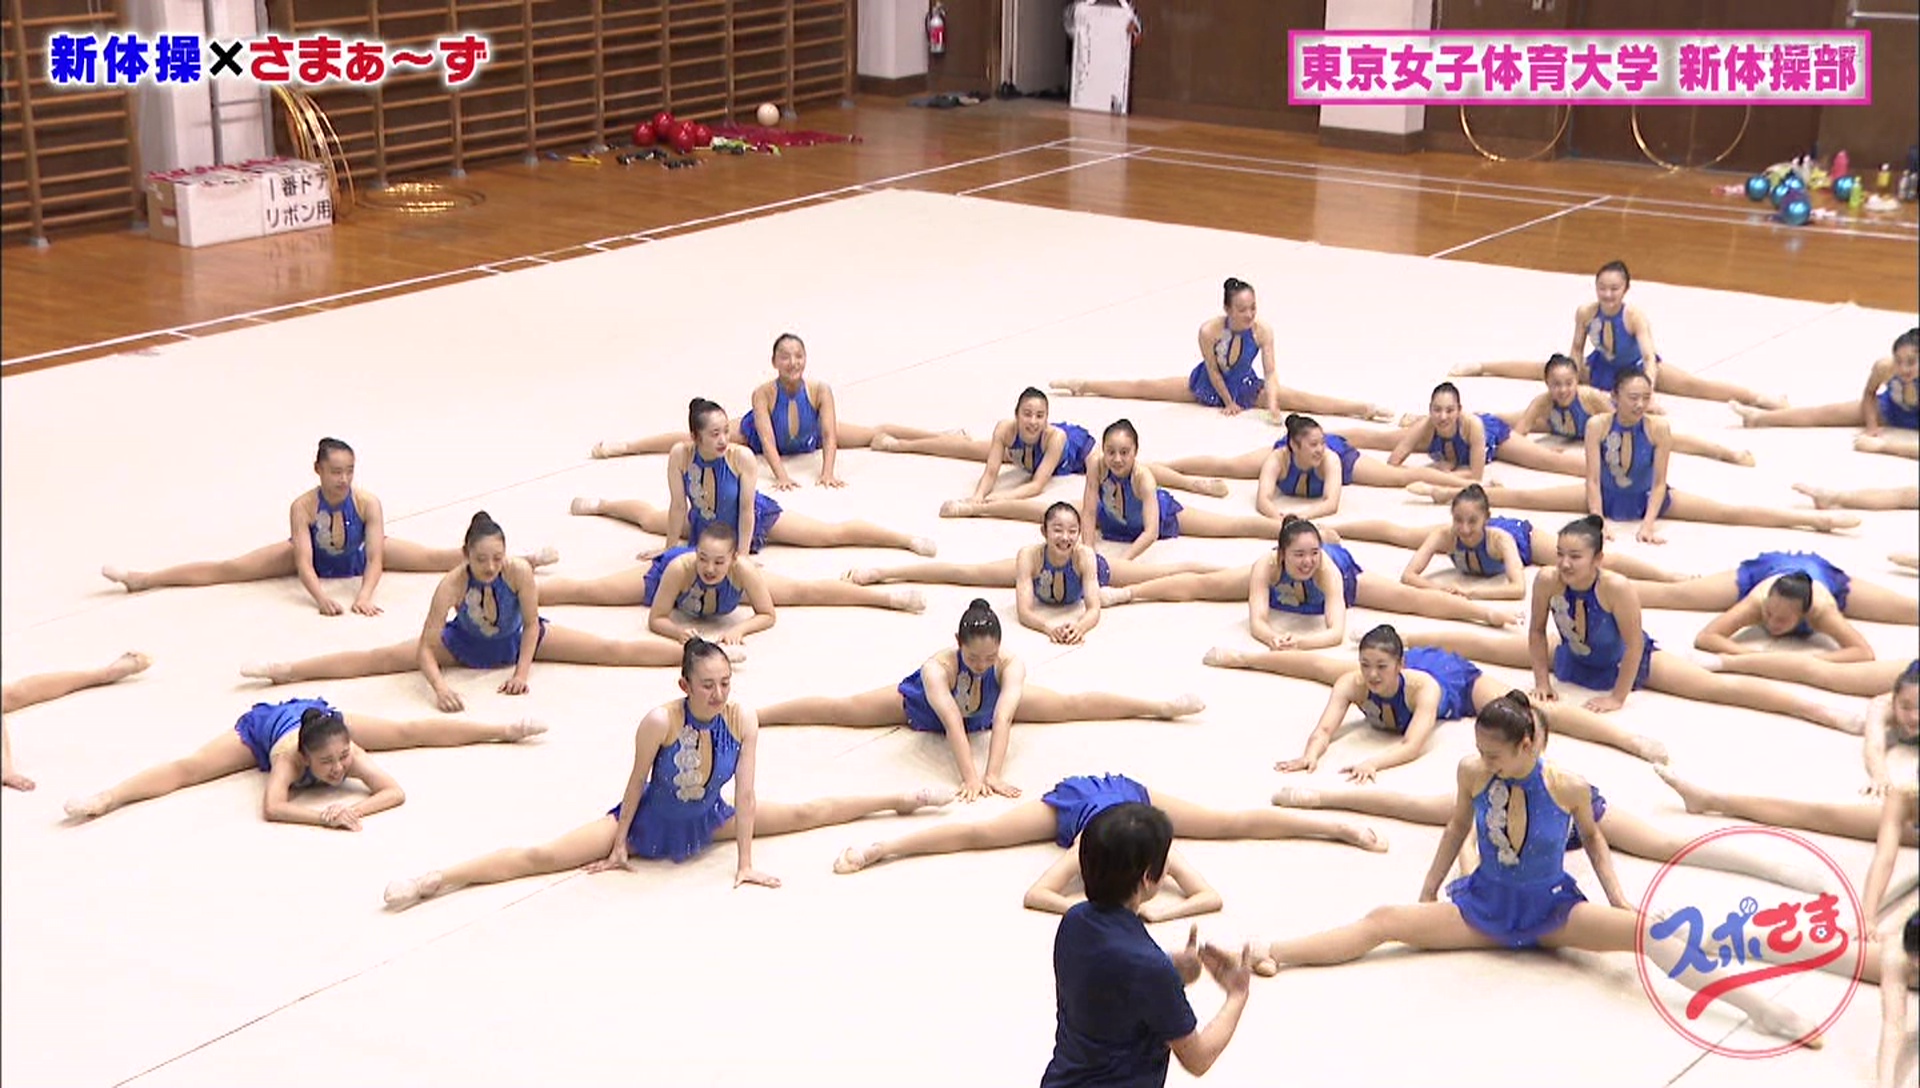 スポさまで東京女子体育大学の新体操部がレオタード姿でエロい割れ目を見せる 爆速 ch